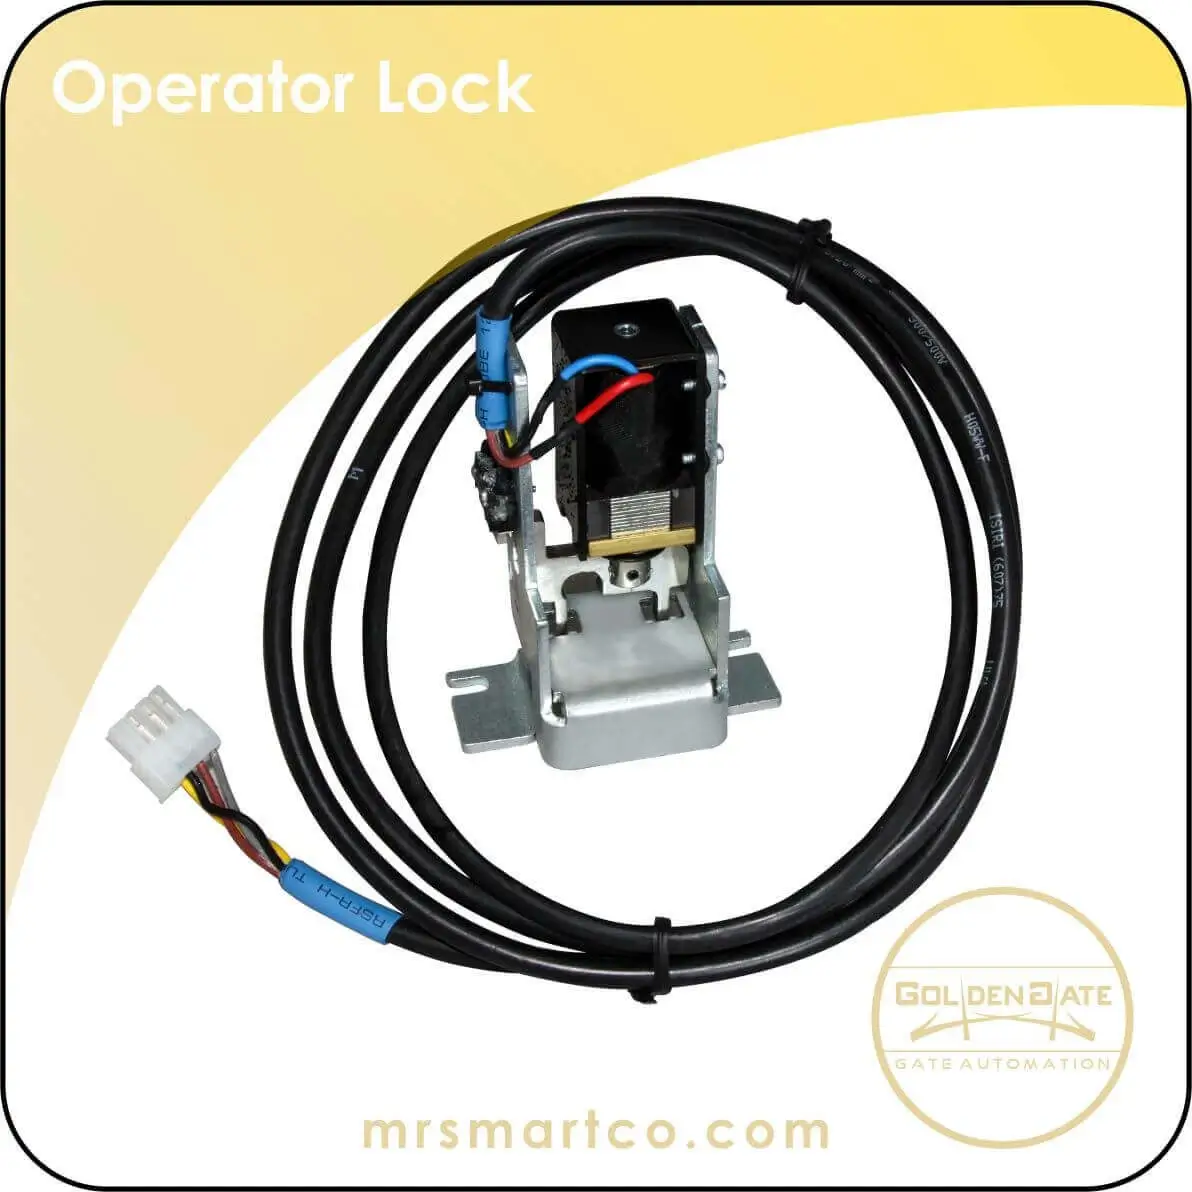 Operator Lock